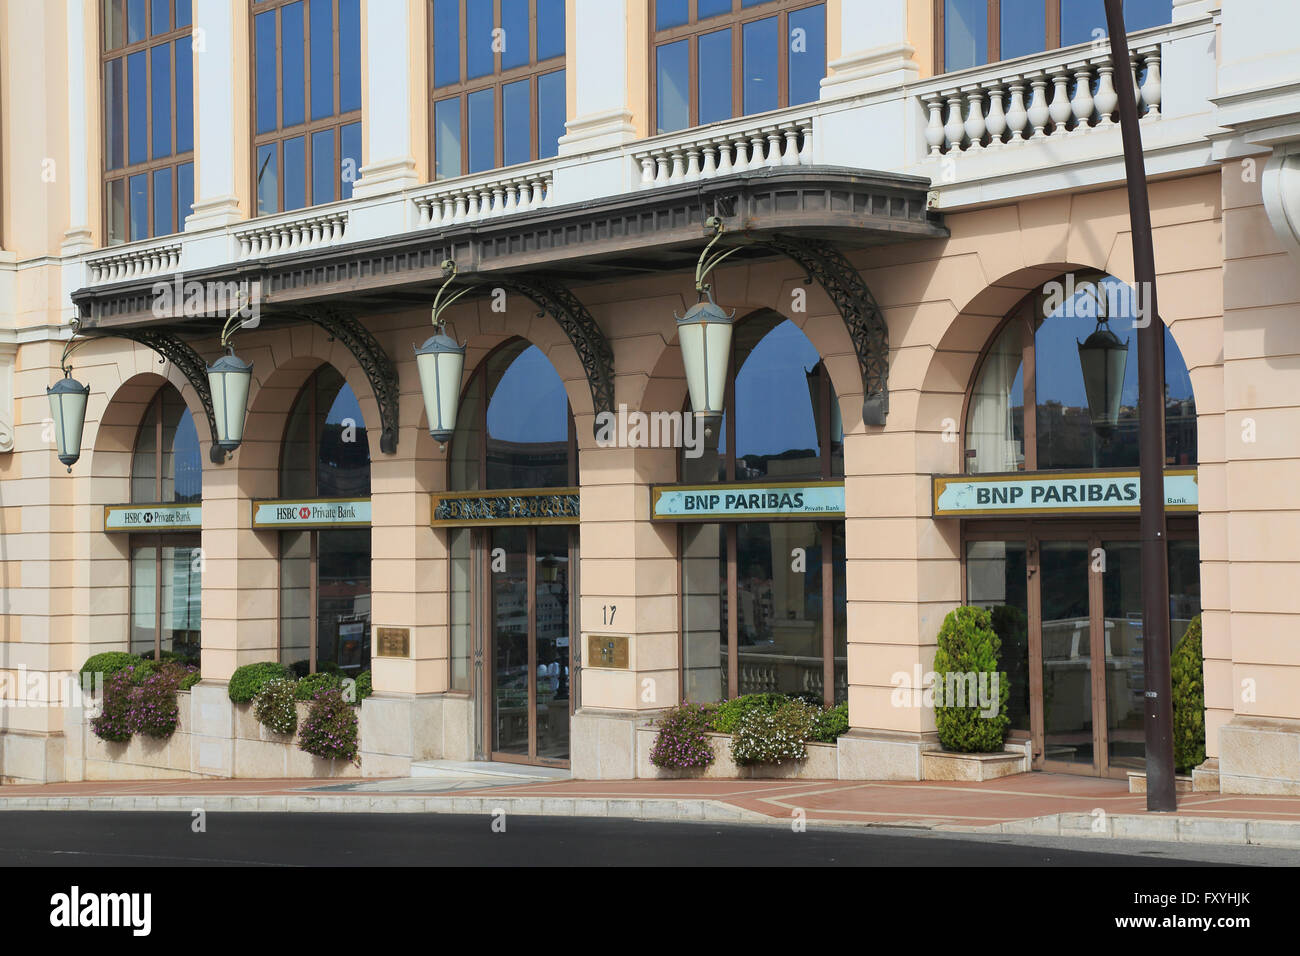 Façade de la banque privée HSBC et BNP PARIBAS le Boulevard d&# 39;Italie, Monaco, Monaco Banque D'Images